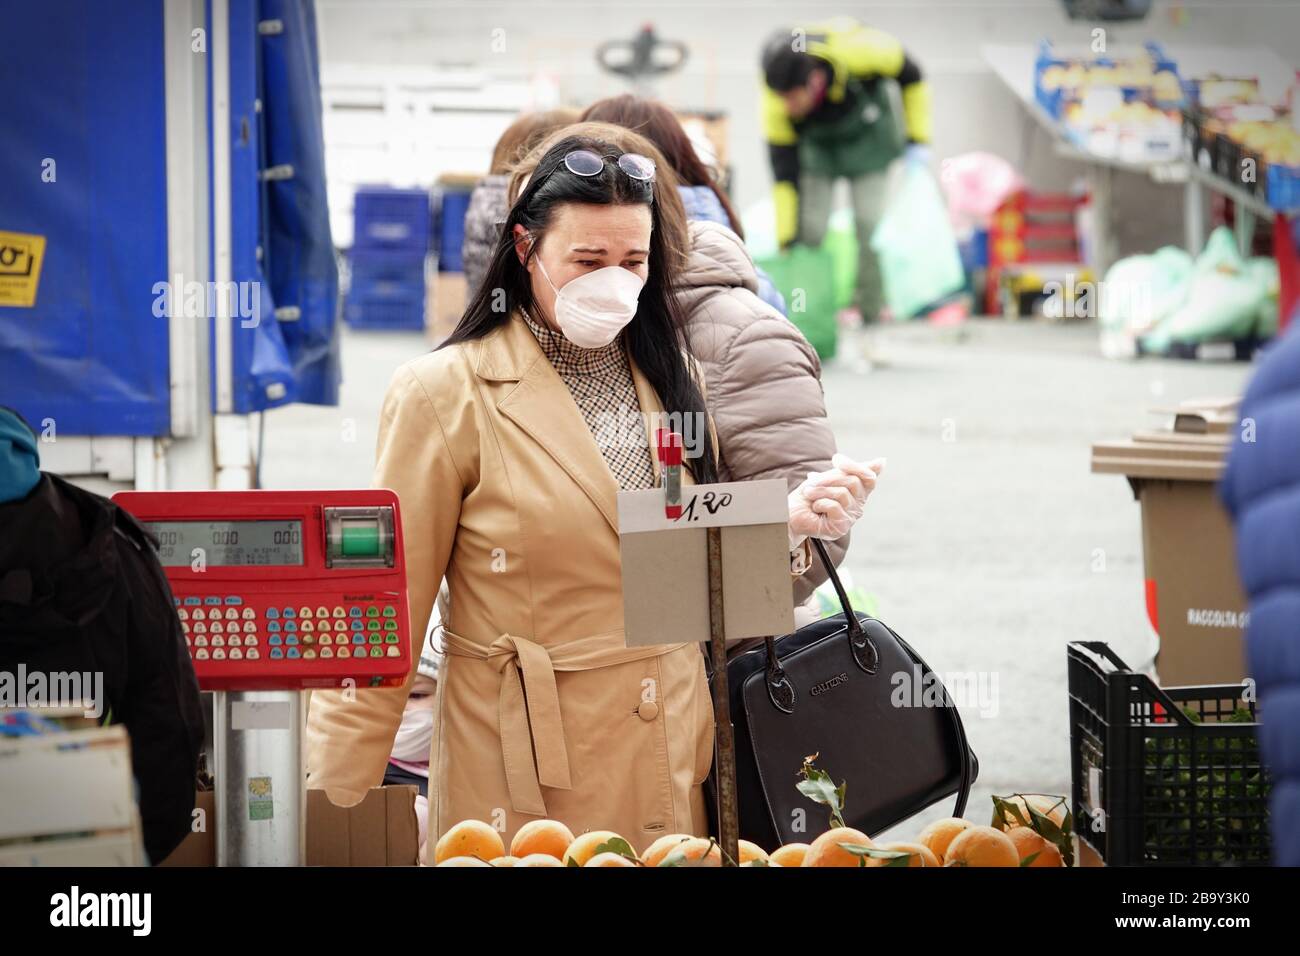 Las personas, con máscaras para la protección contra COVID-19, están comprando verduras y frutas en el mercado. Turín, Italia - marzo de 2020 Foto de stock